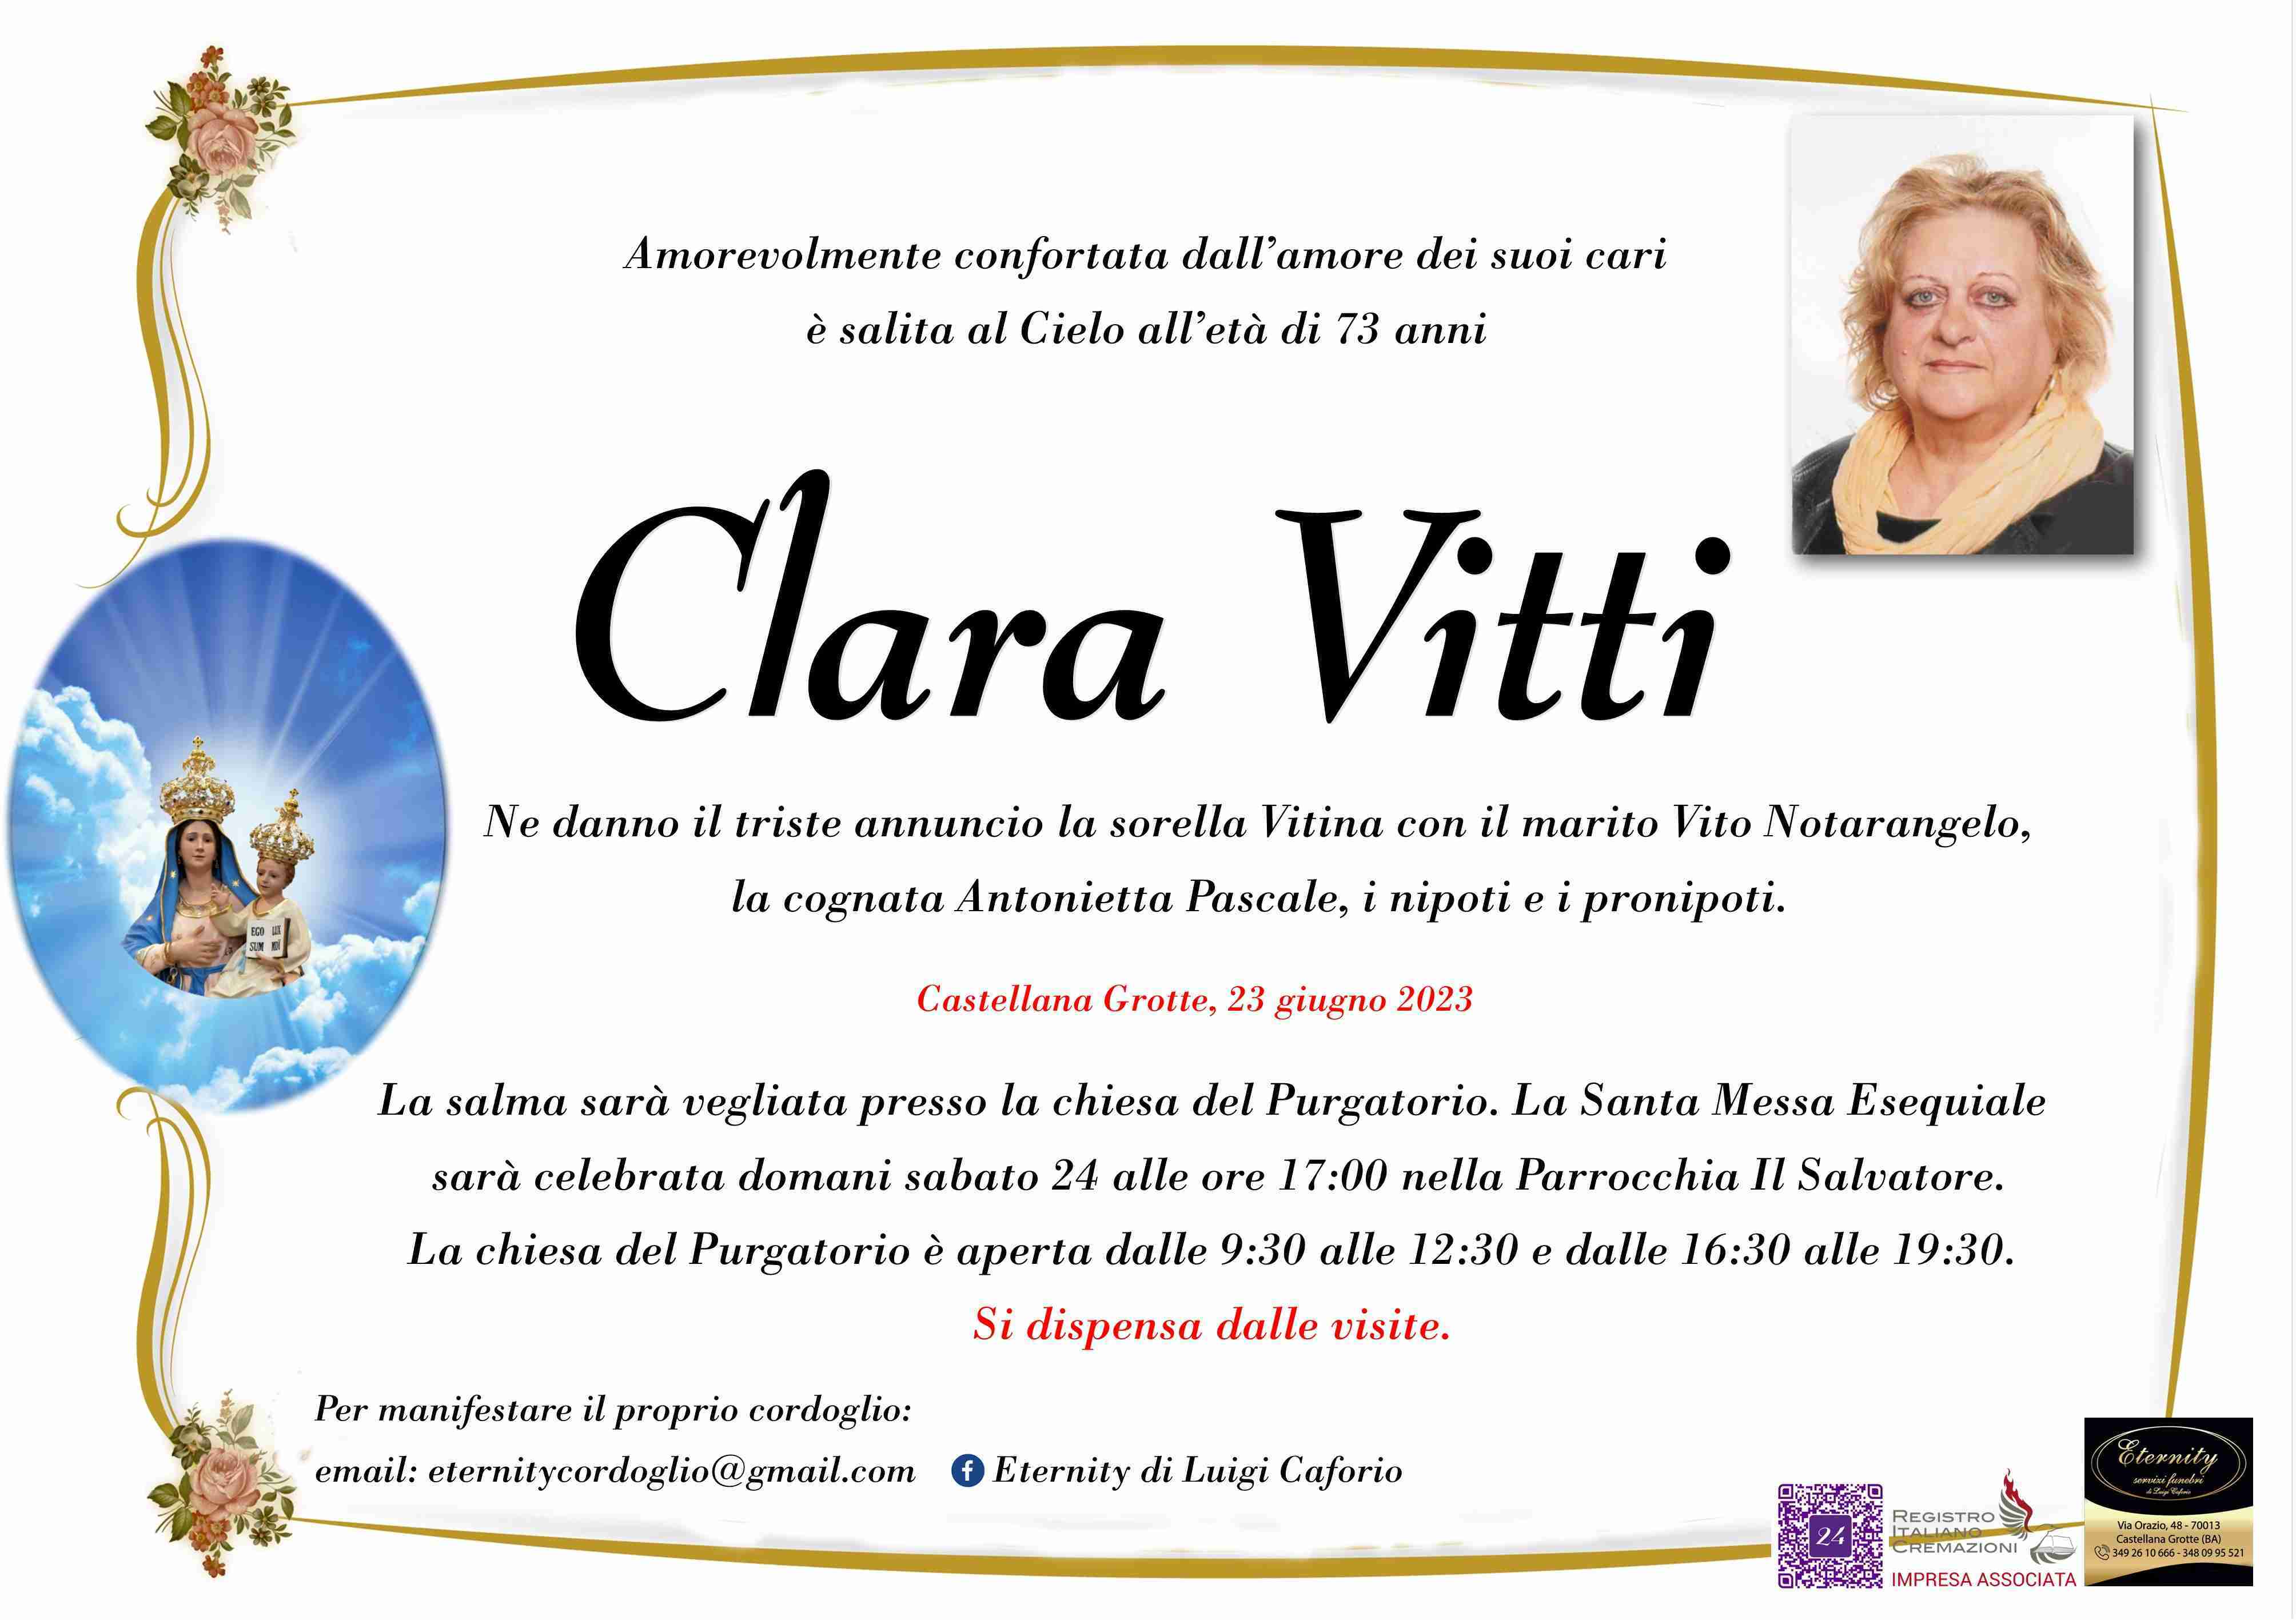 Clara Vitti